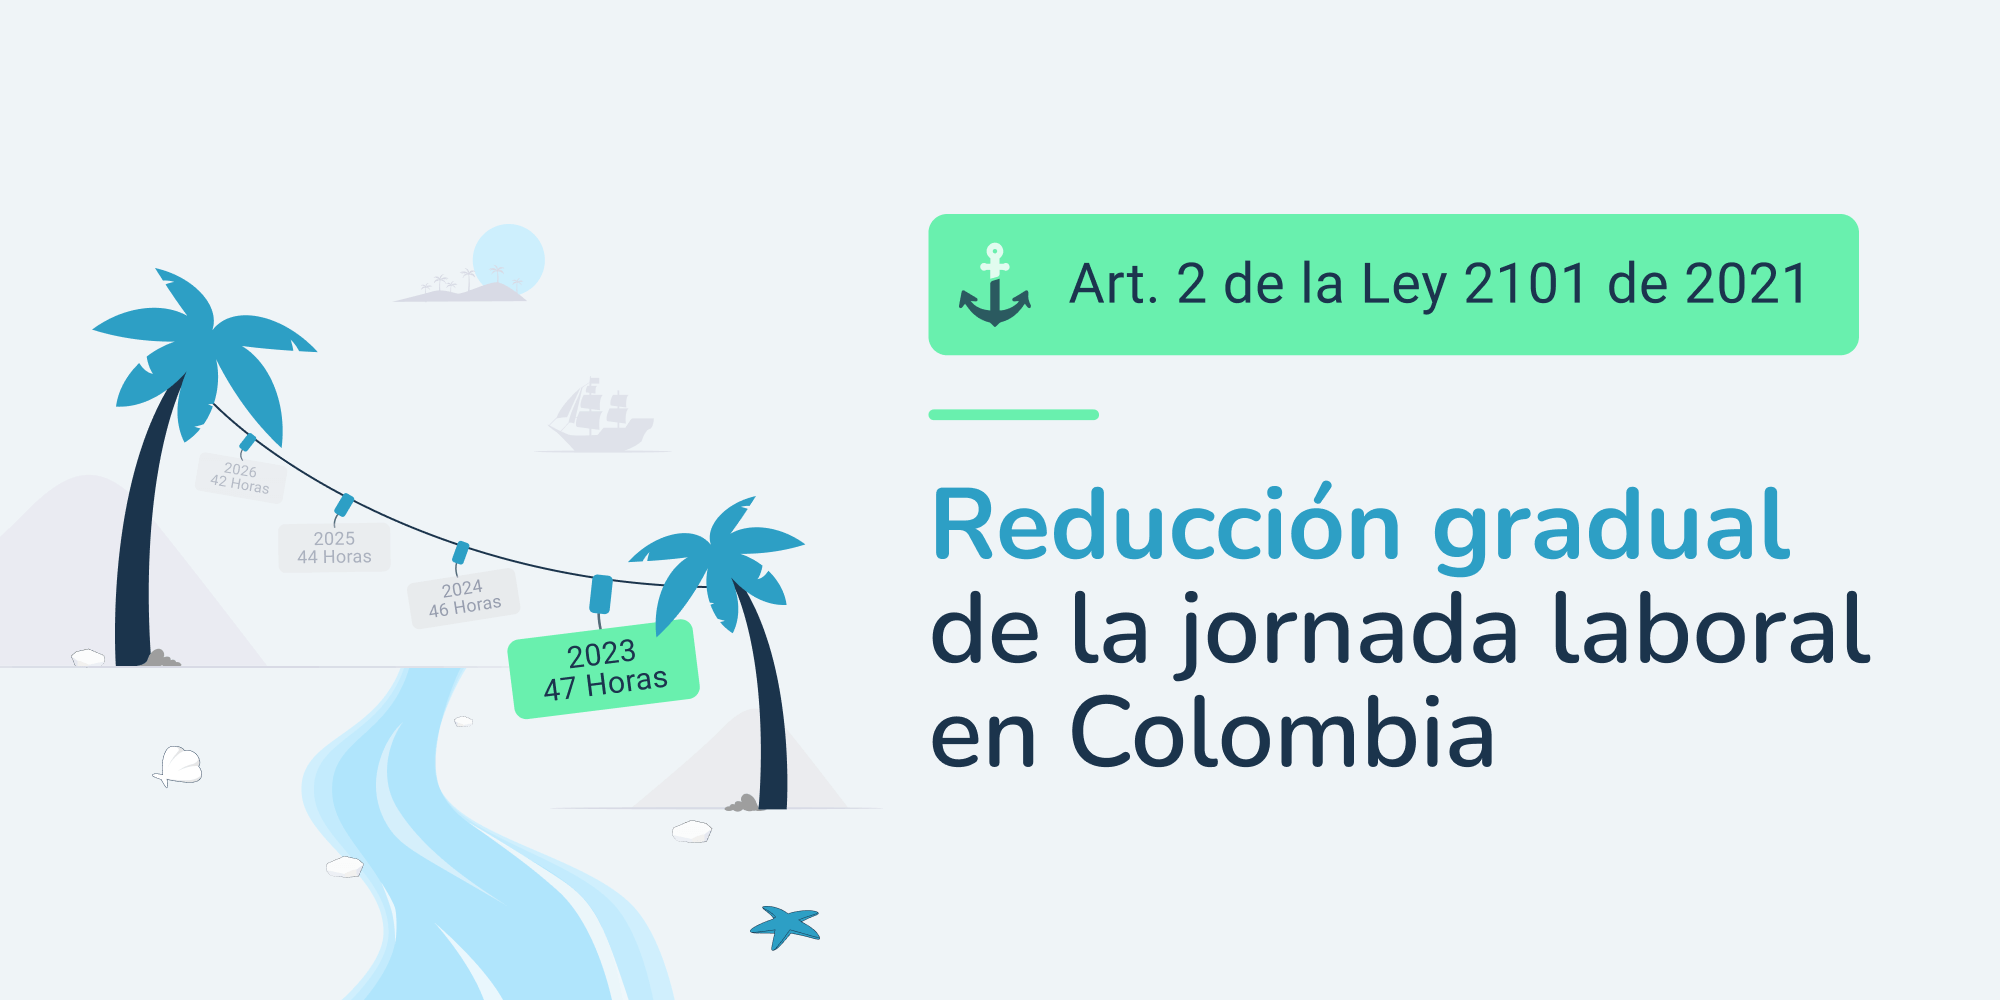 Reducción gradual de la jornada laboral en Colombia